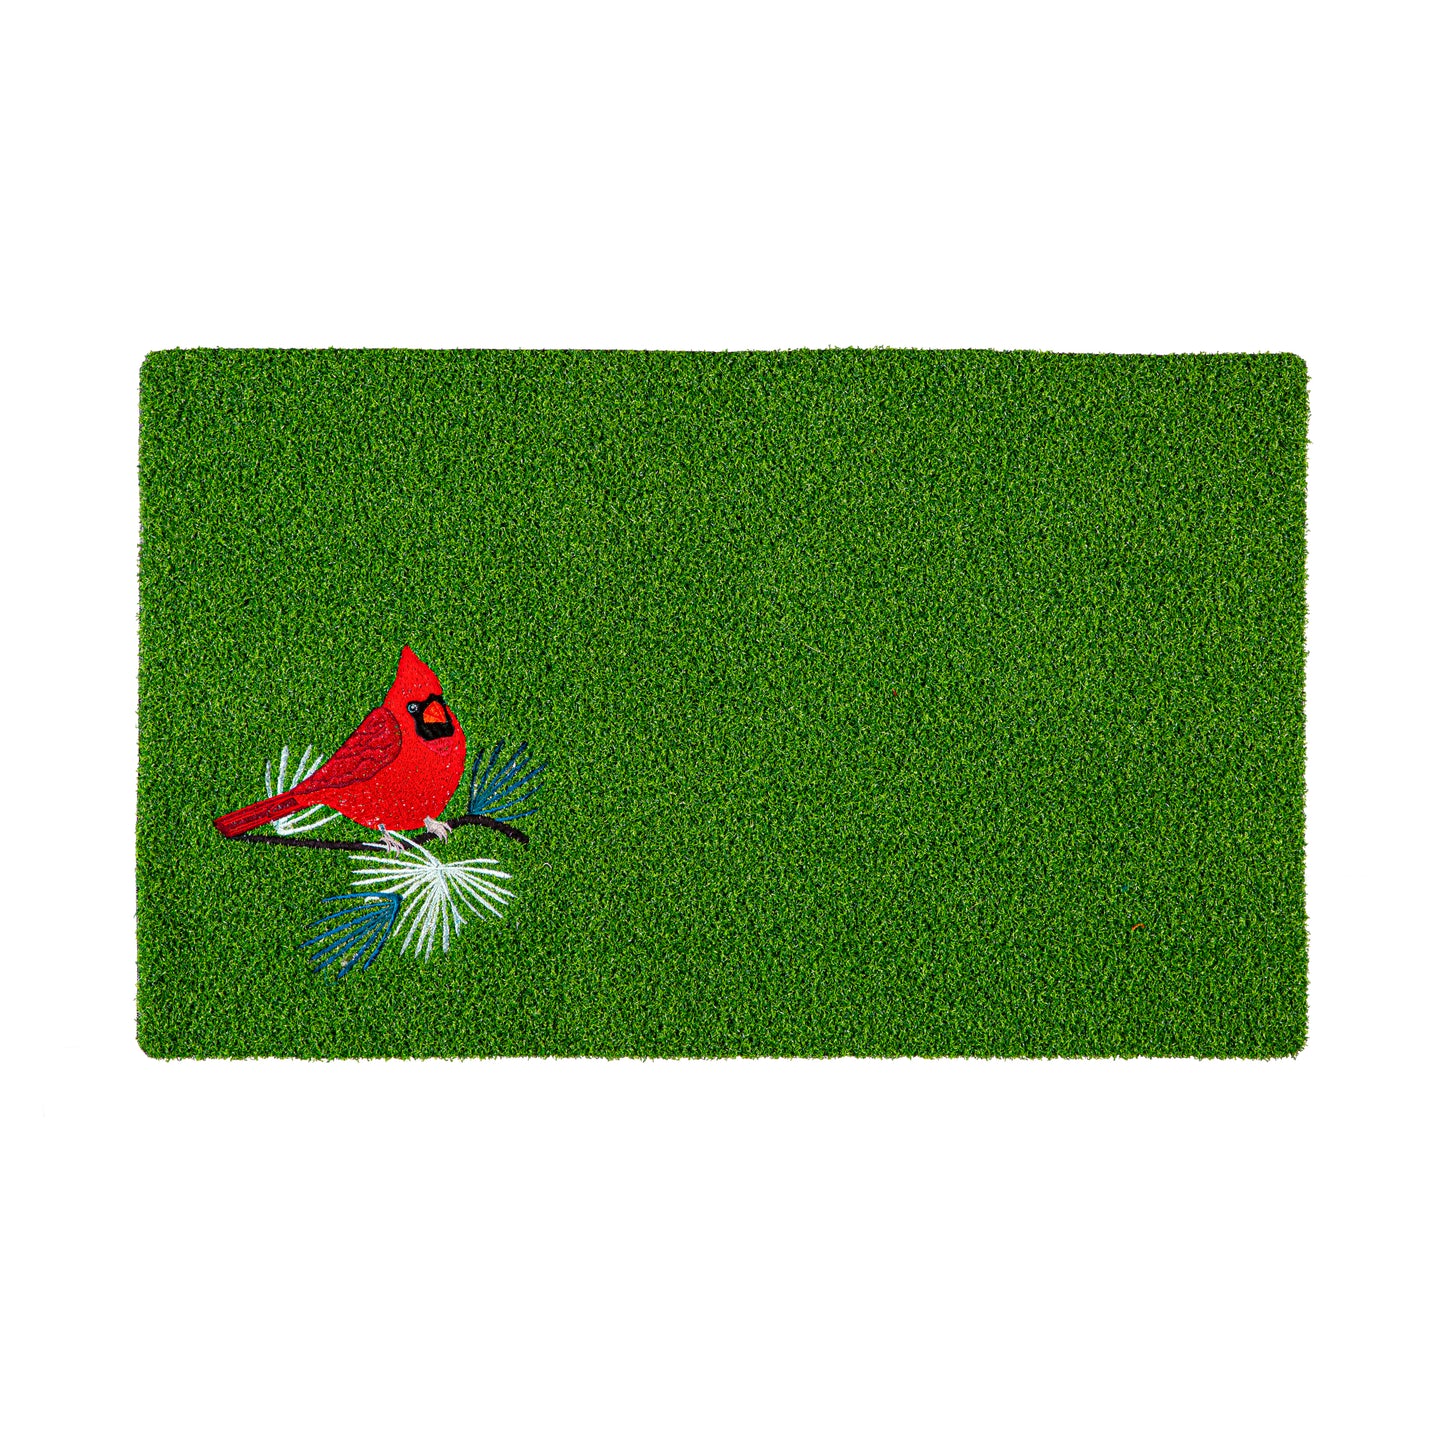 Grass Mat - Red Cardinal